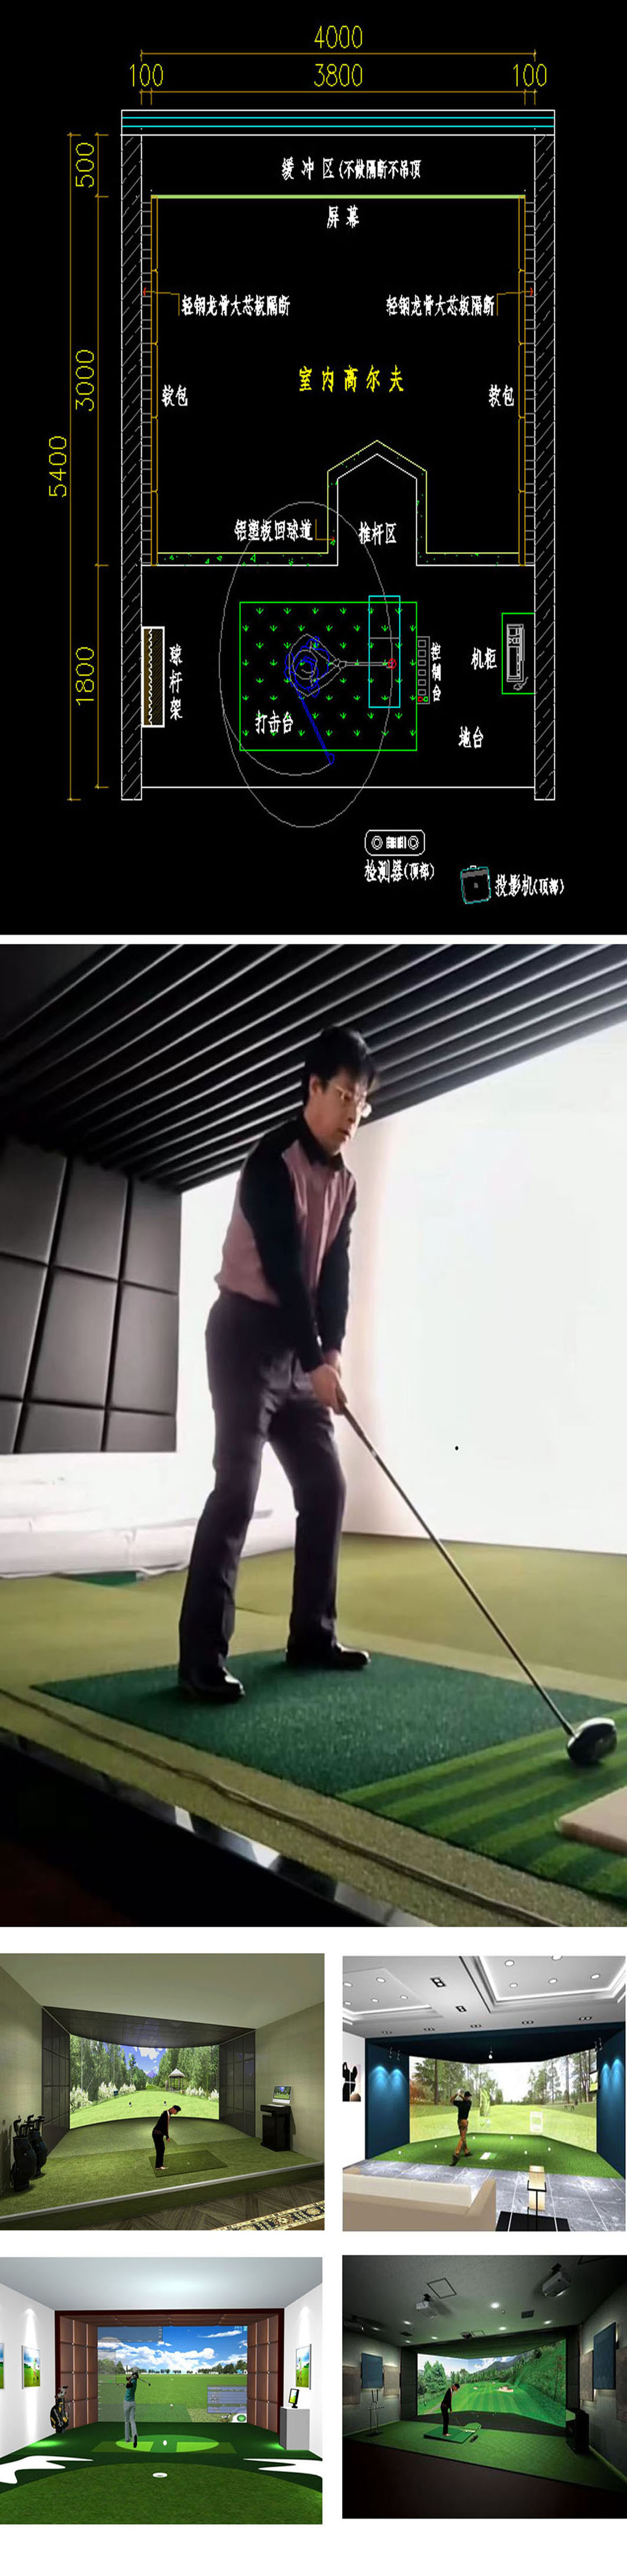 室内模拟高尔夫系统 01.jpg